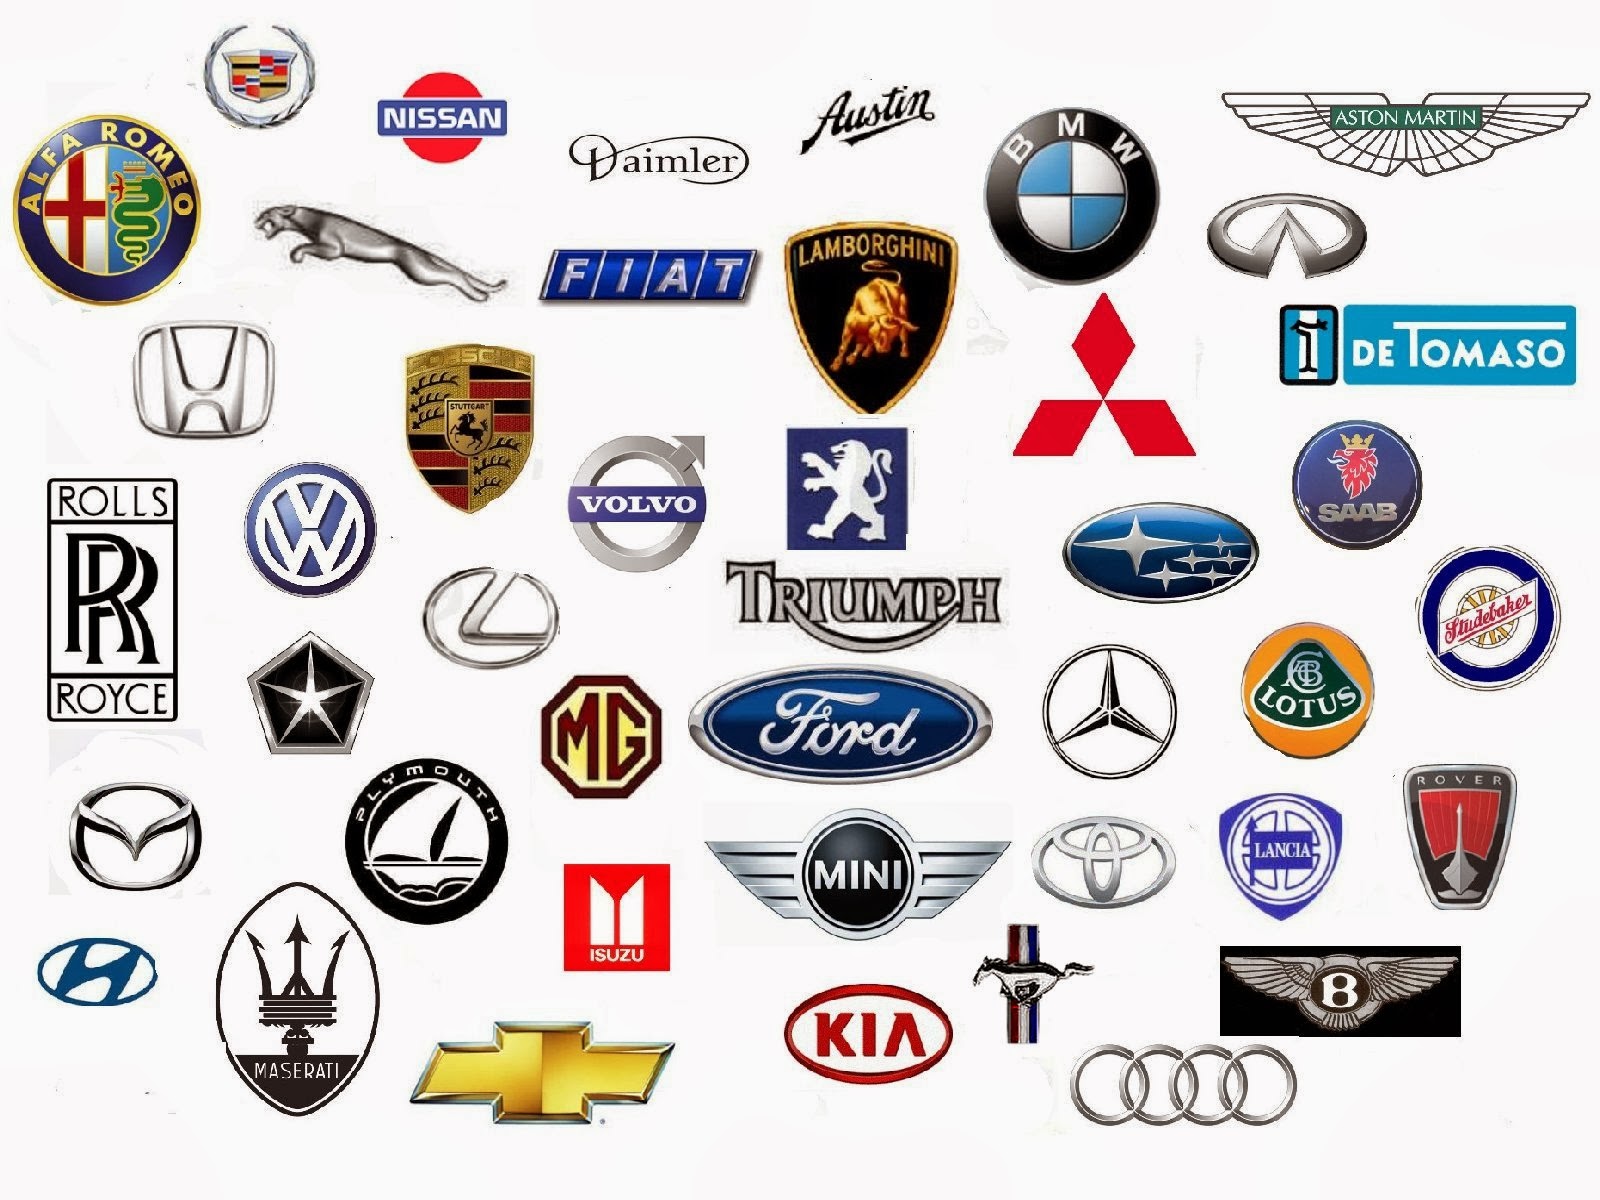 Car Badges And Names 2019 2020 Upcoming Cars